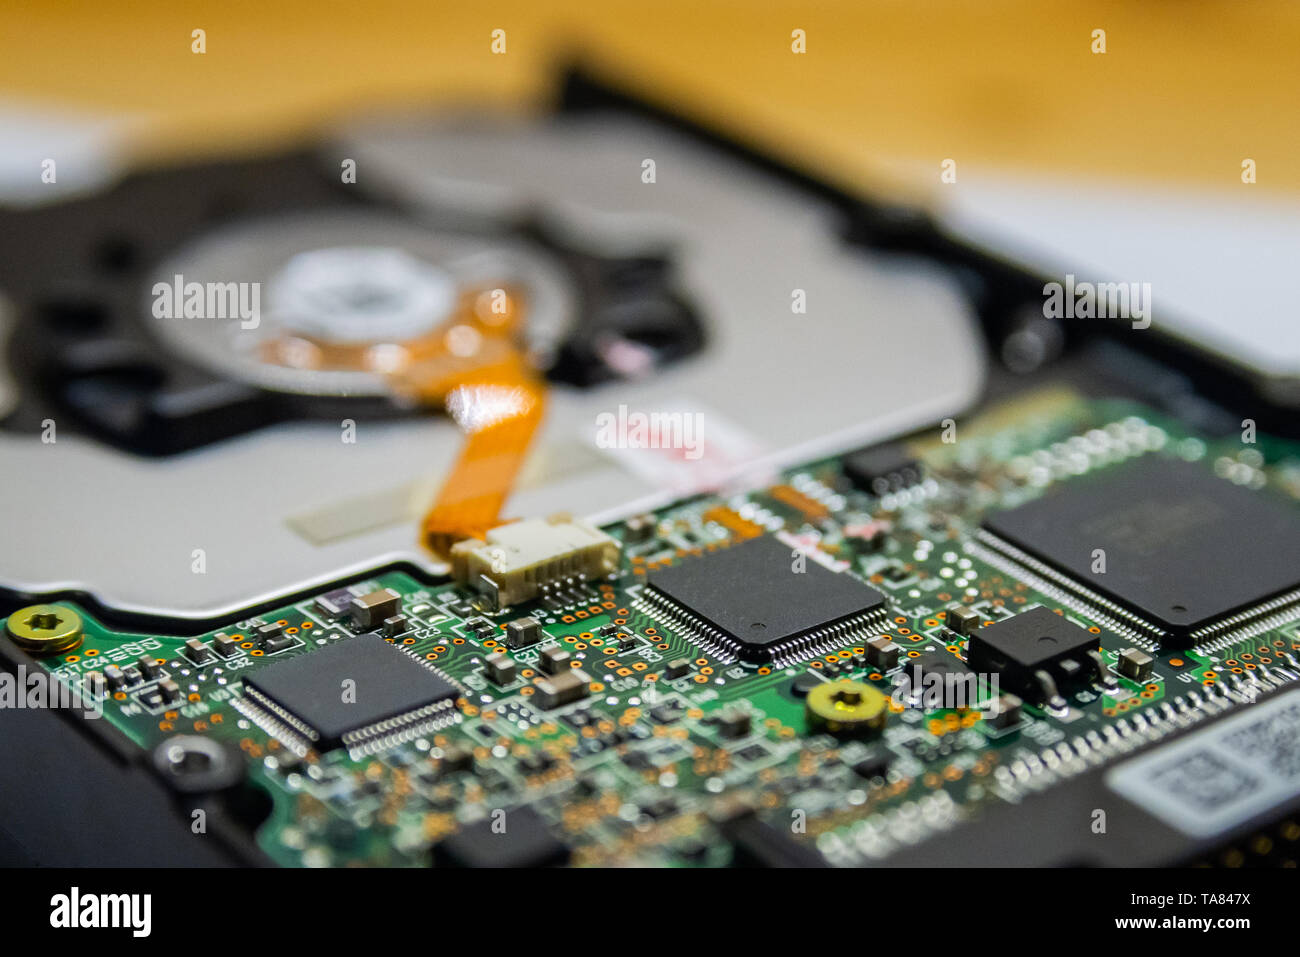 Computer Festplatte Elektronik Schaltung, Makro Foto. Festplatte reparieren Daten Konzept Konzept zu speichern. Blur Hintergrund mit selektiven Fokus. Stockfoto